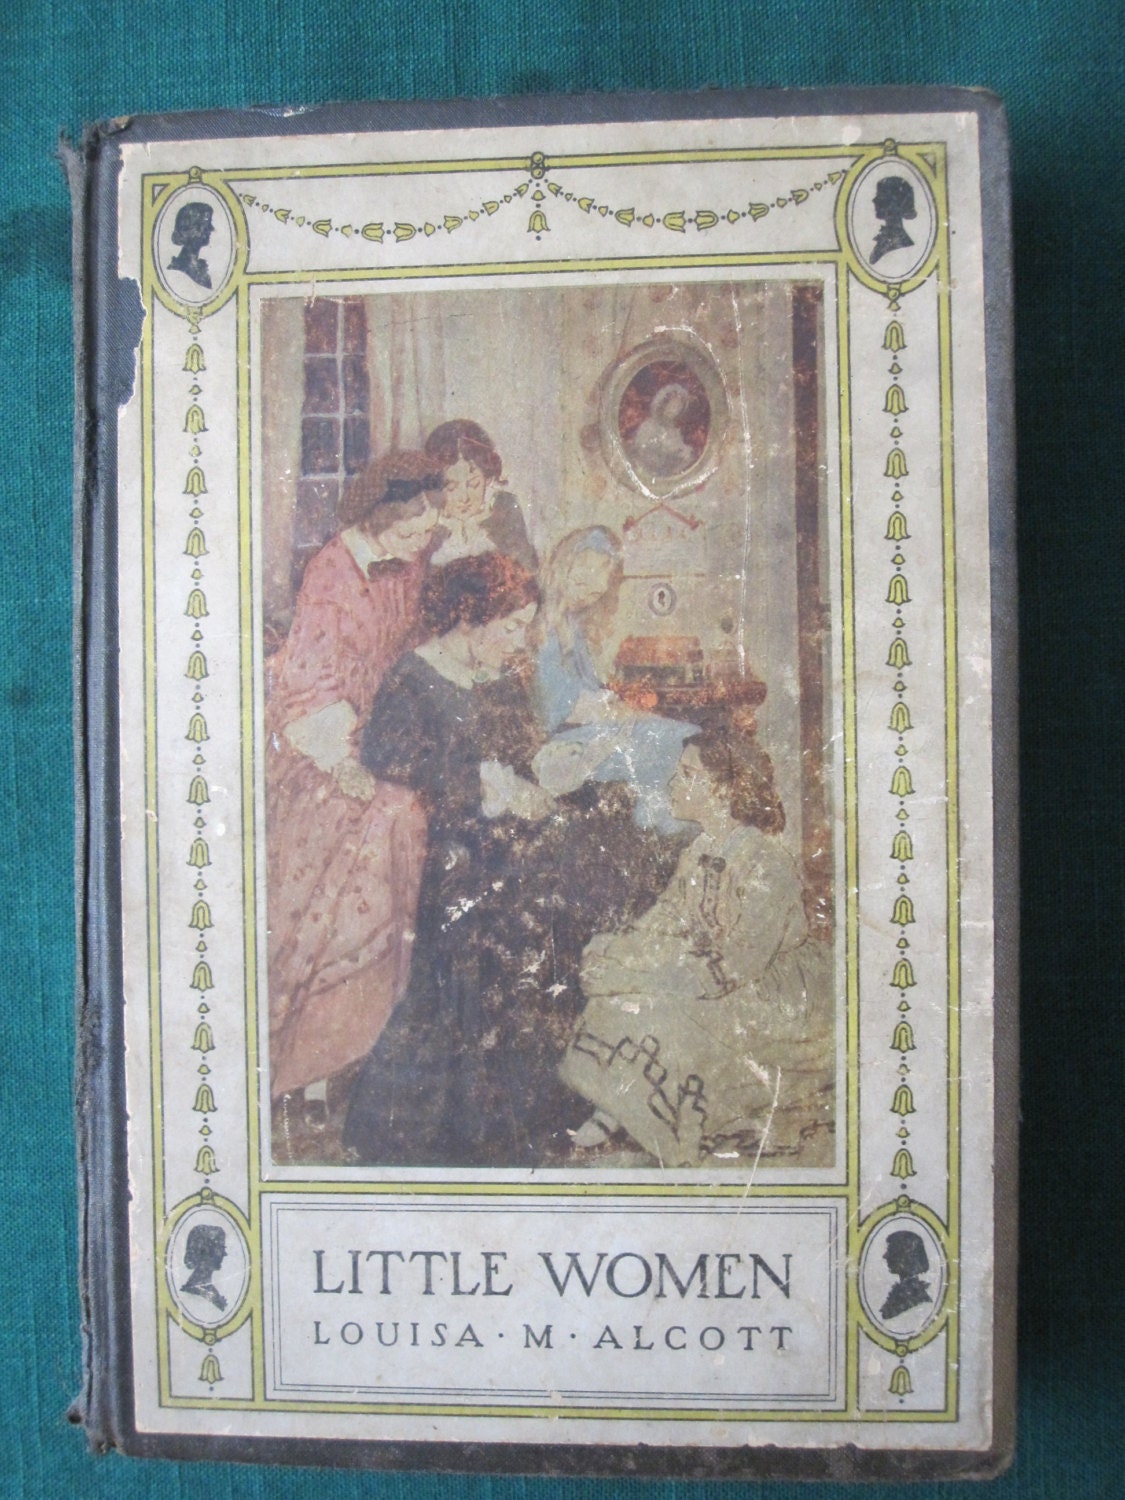 little women book louisa may alcott